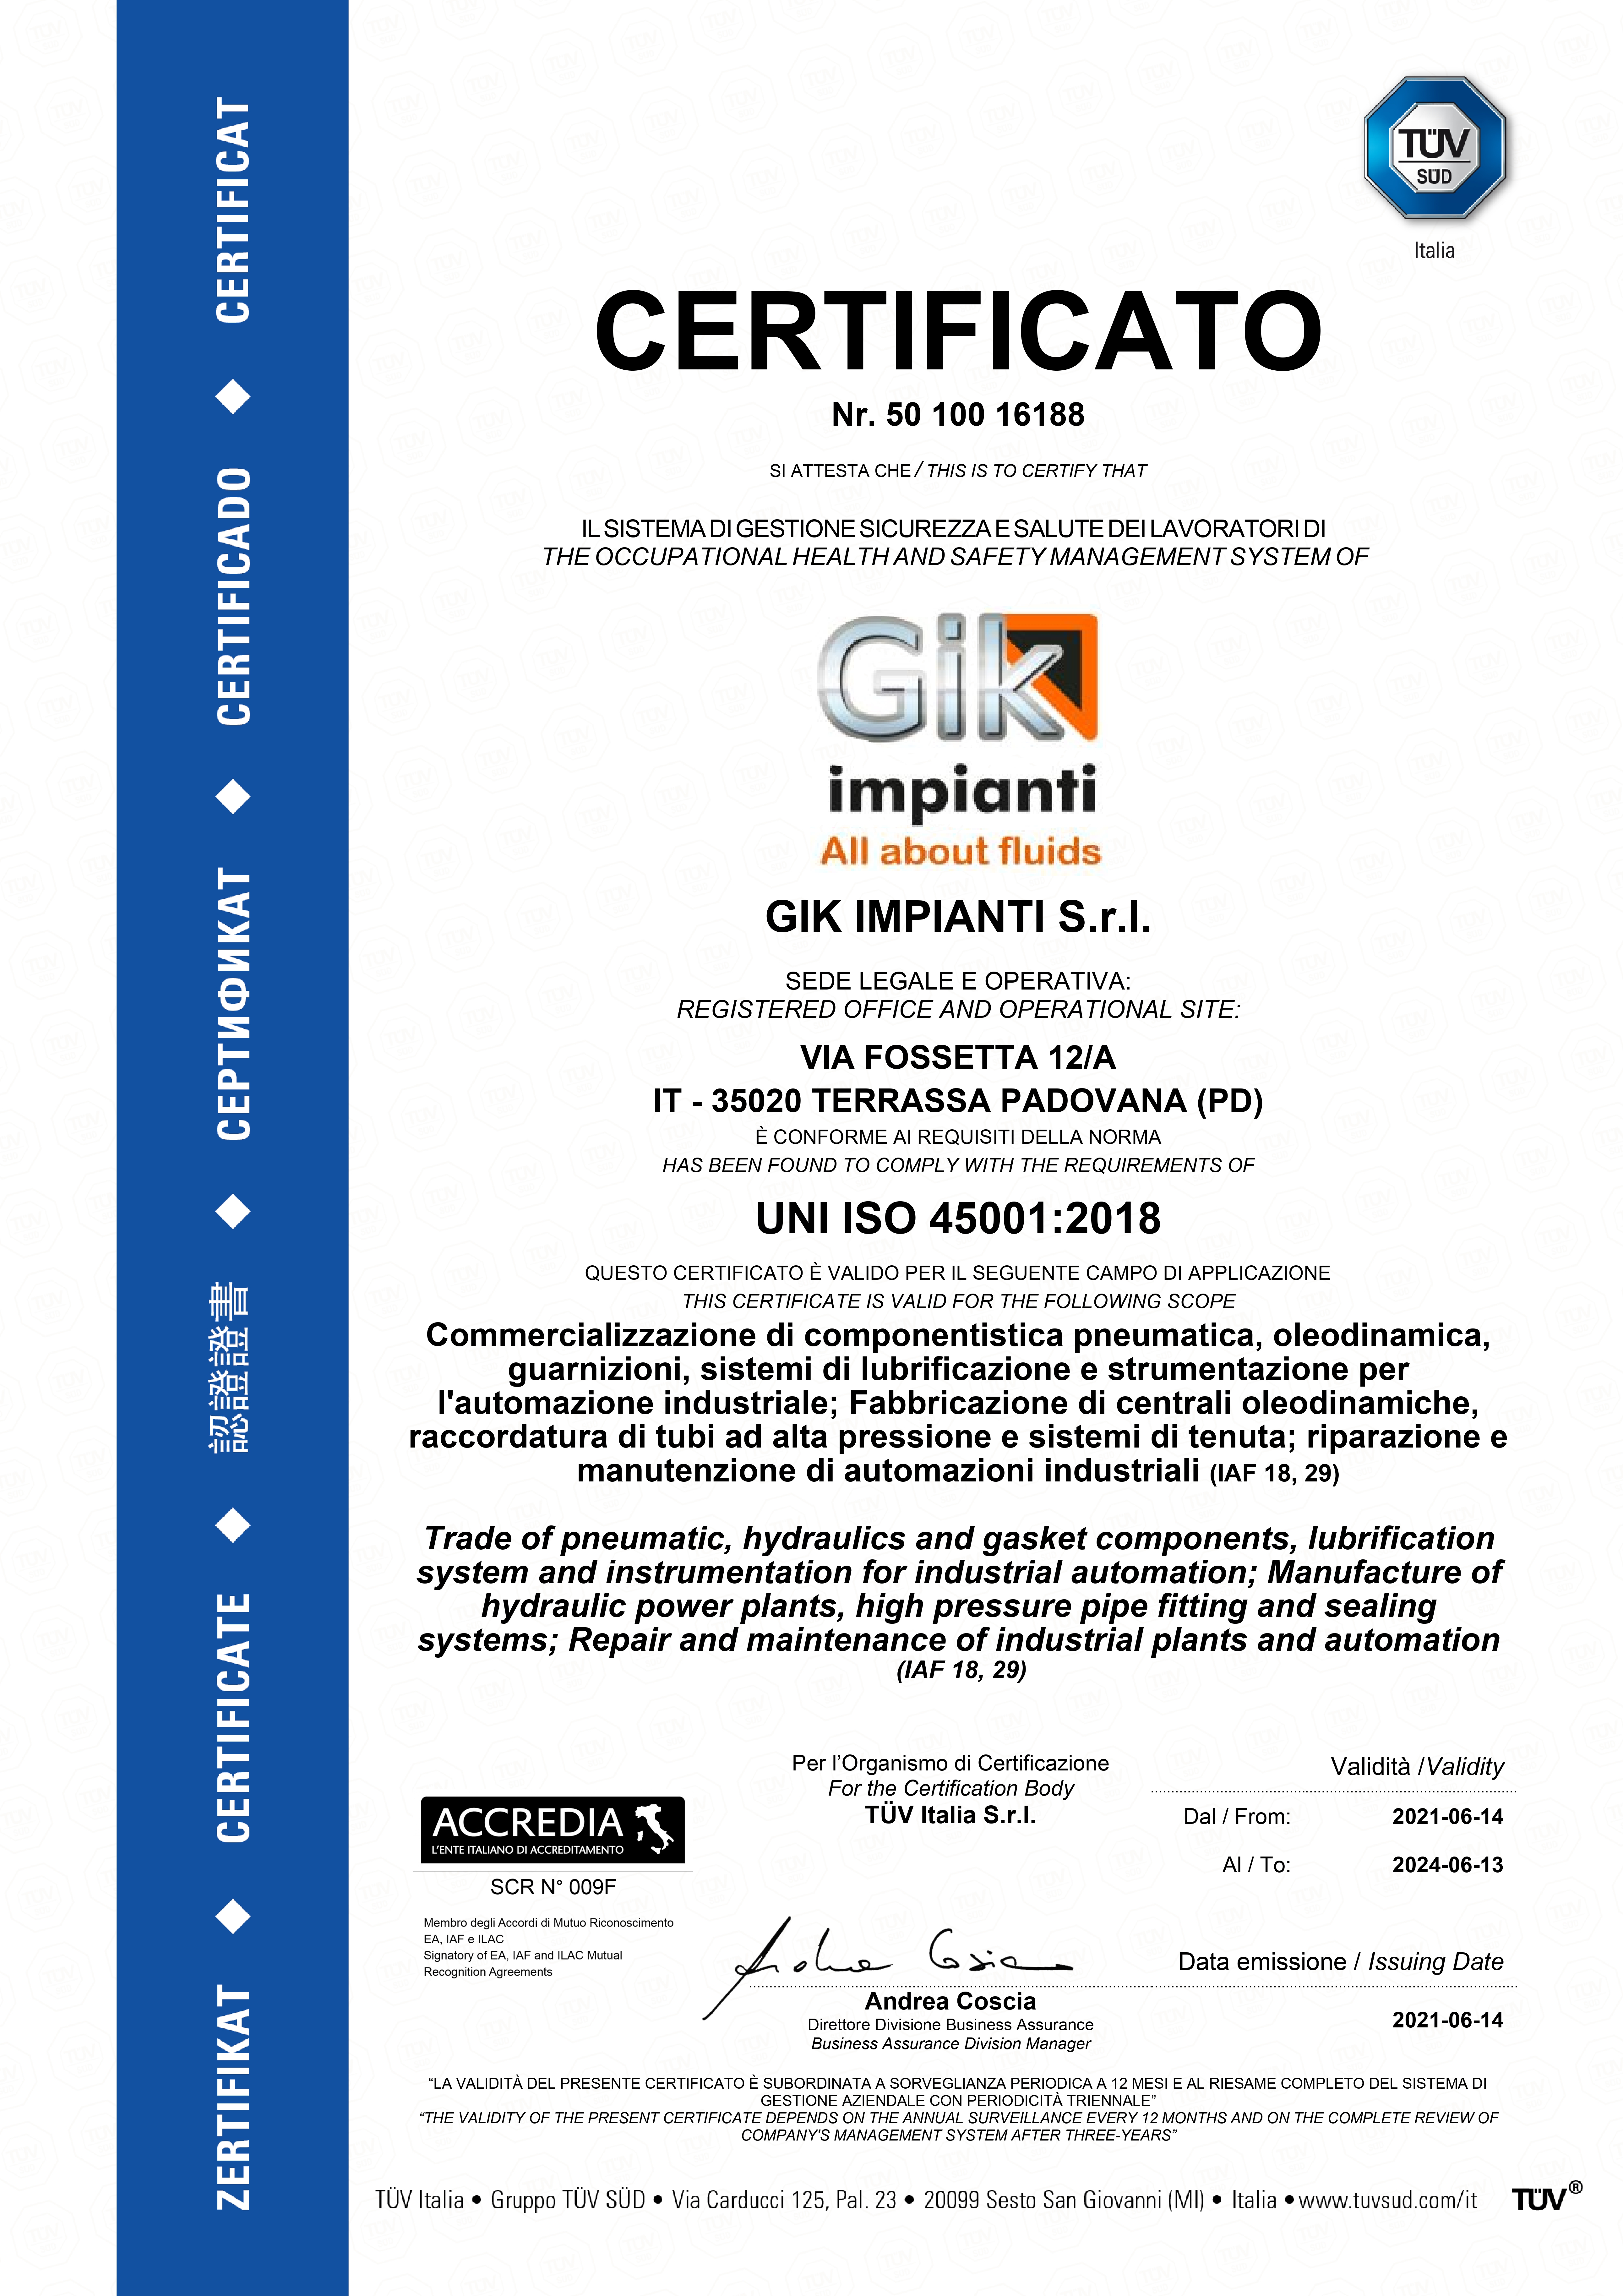 Abbiamo ottenuto la certificazione UNI ISO 45001:2018